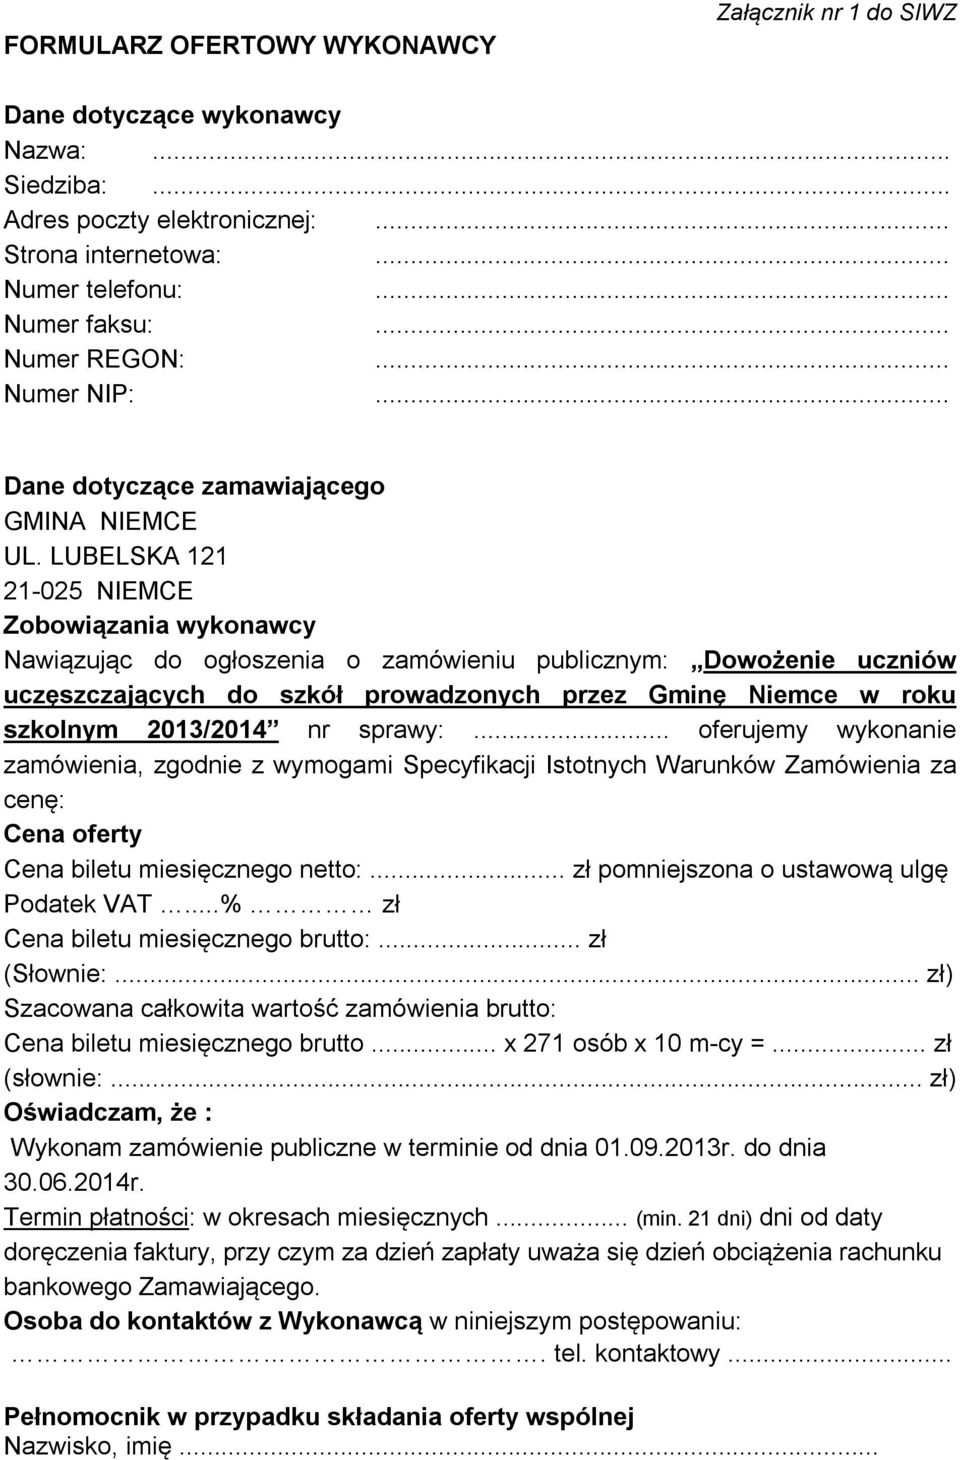 LUBELSKA 121 21-025 NIEMCE Zobowiązania wykonawcy Nawiązując do ogłoszenia o zamówieniu publicznym: Dowożenie uczniów uczęszczających do szkół prowadzonych przez Gminę Niemce w roku szkolnym